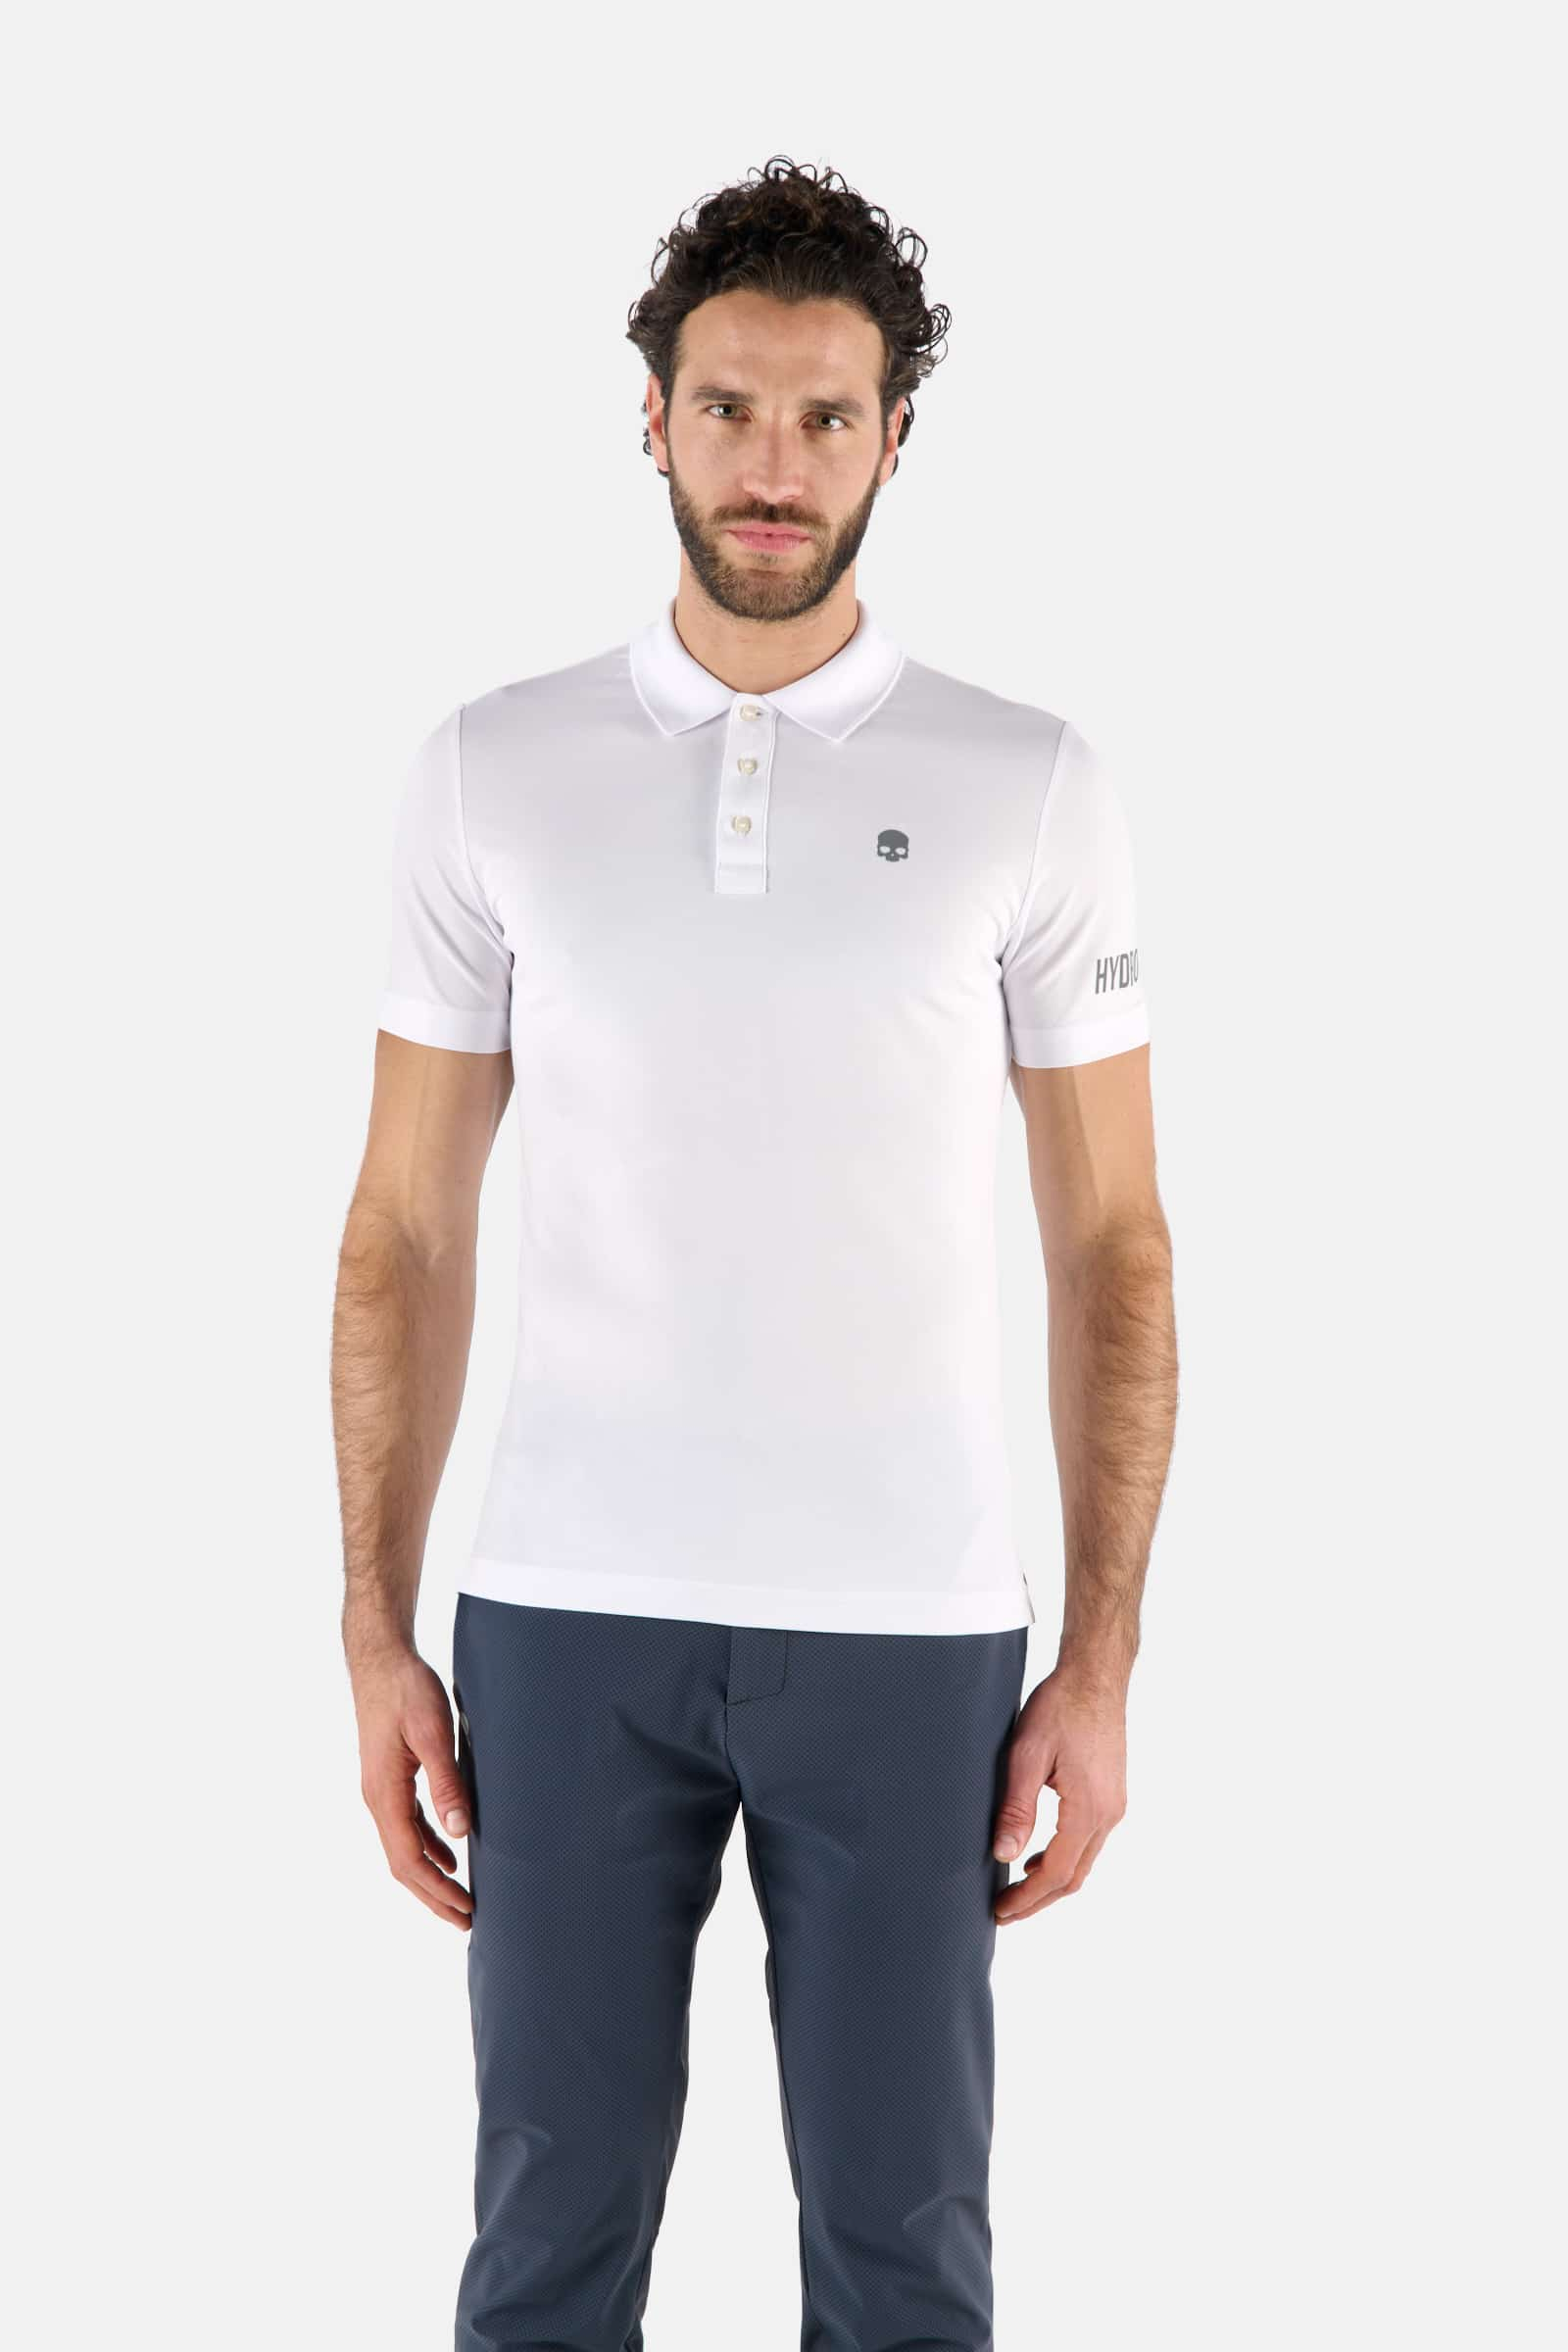 GOLF PIQUET POLO COMFORT - WHITE - Hydrogen - Luxury Sportwear